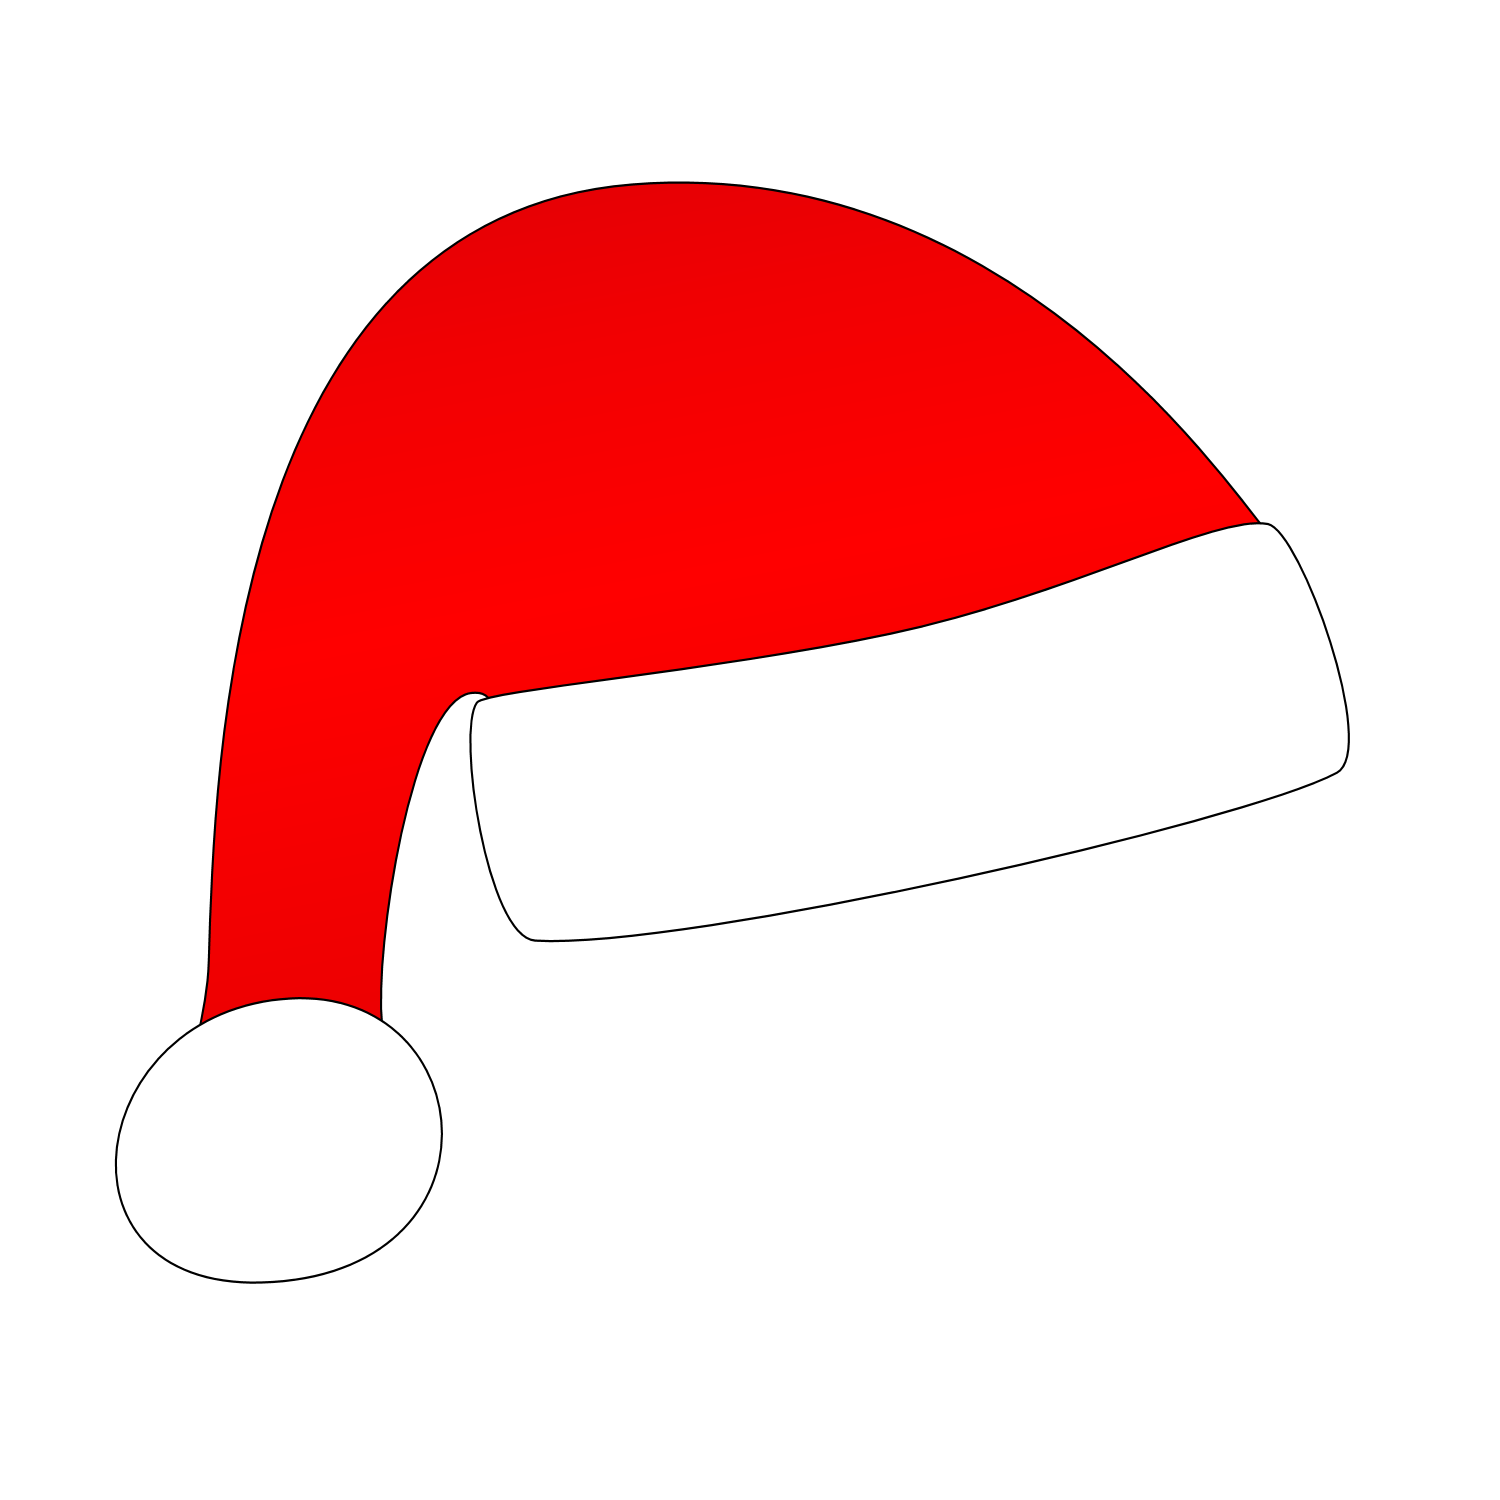 サンタの帽子、クリスマスの帽子